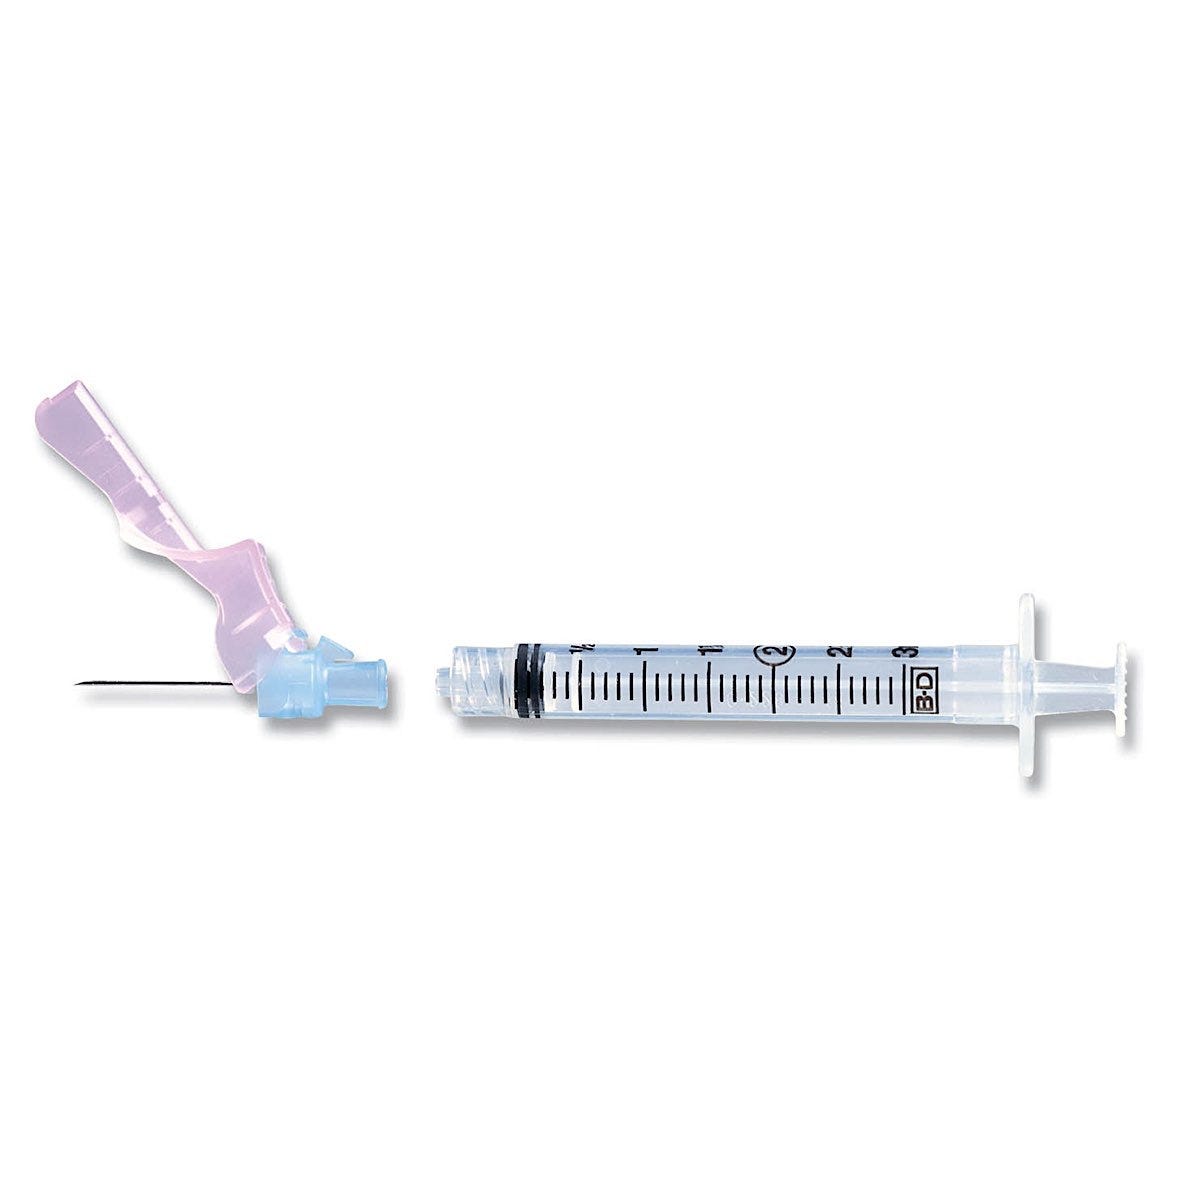 BD Safety Syringe w/Needle, 22G x 1" - 50/box